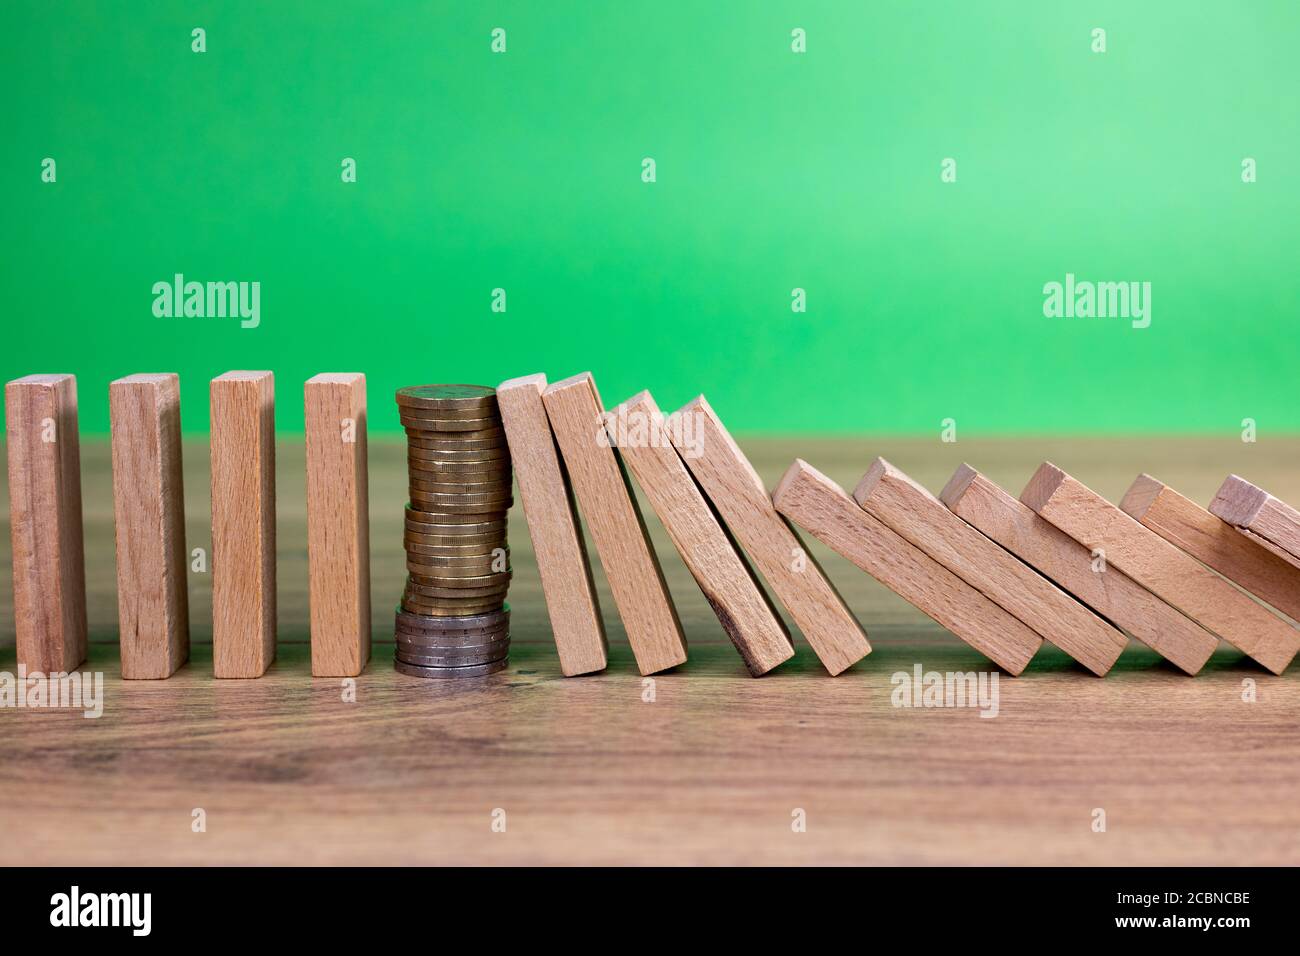 concetto di effetto domino con piastrelle di legno bloccate da moneta con sfondo verde Foto Stock